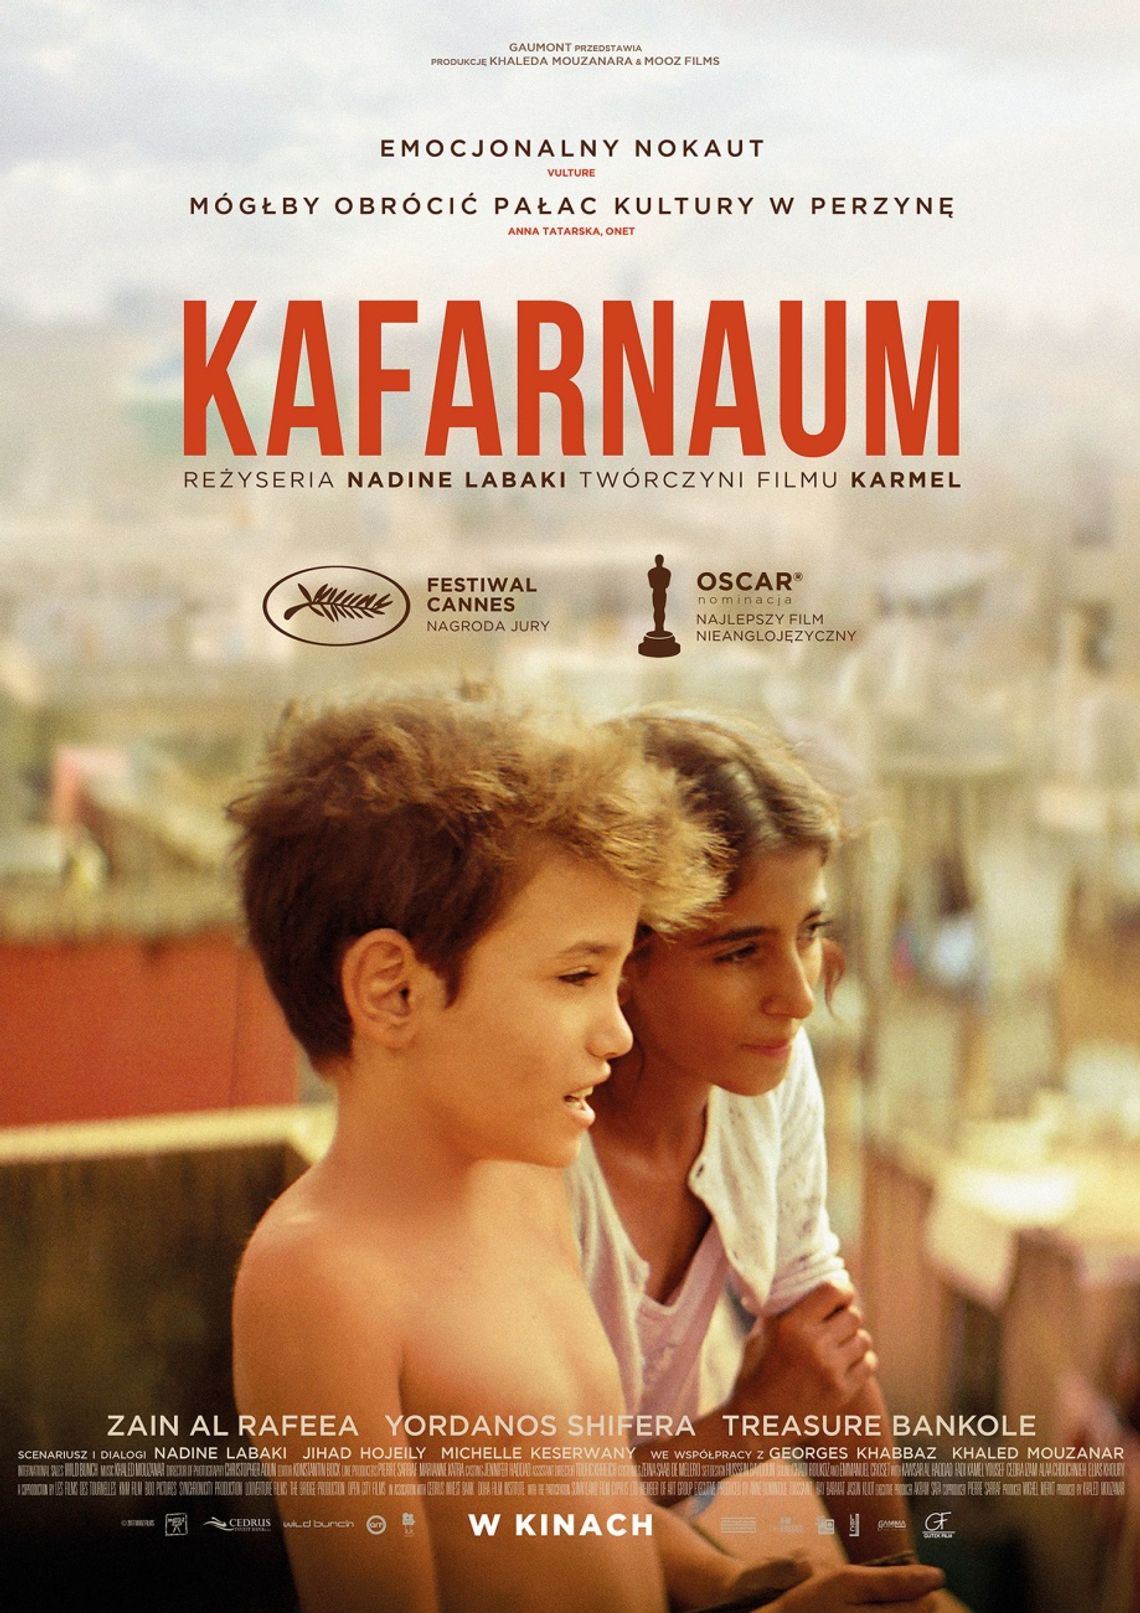 DKF Rewers zaprasza - "Kafarnaum", reż. Nadine Labaki - Gość specjalny - ARTUR ZABORSKI